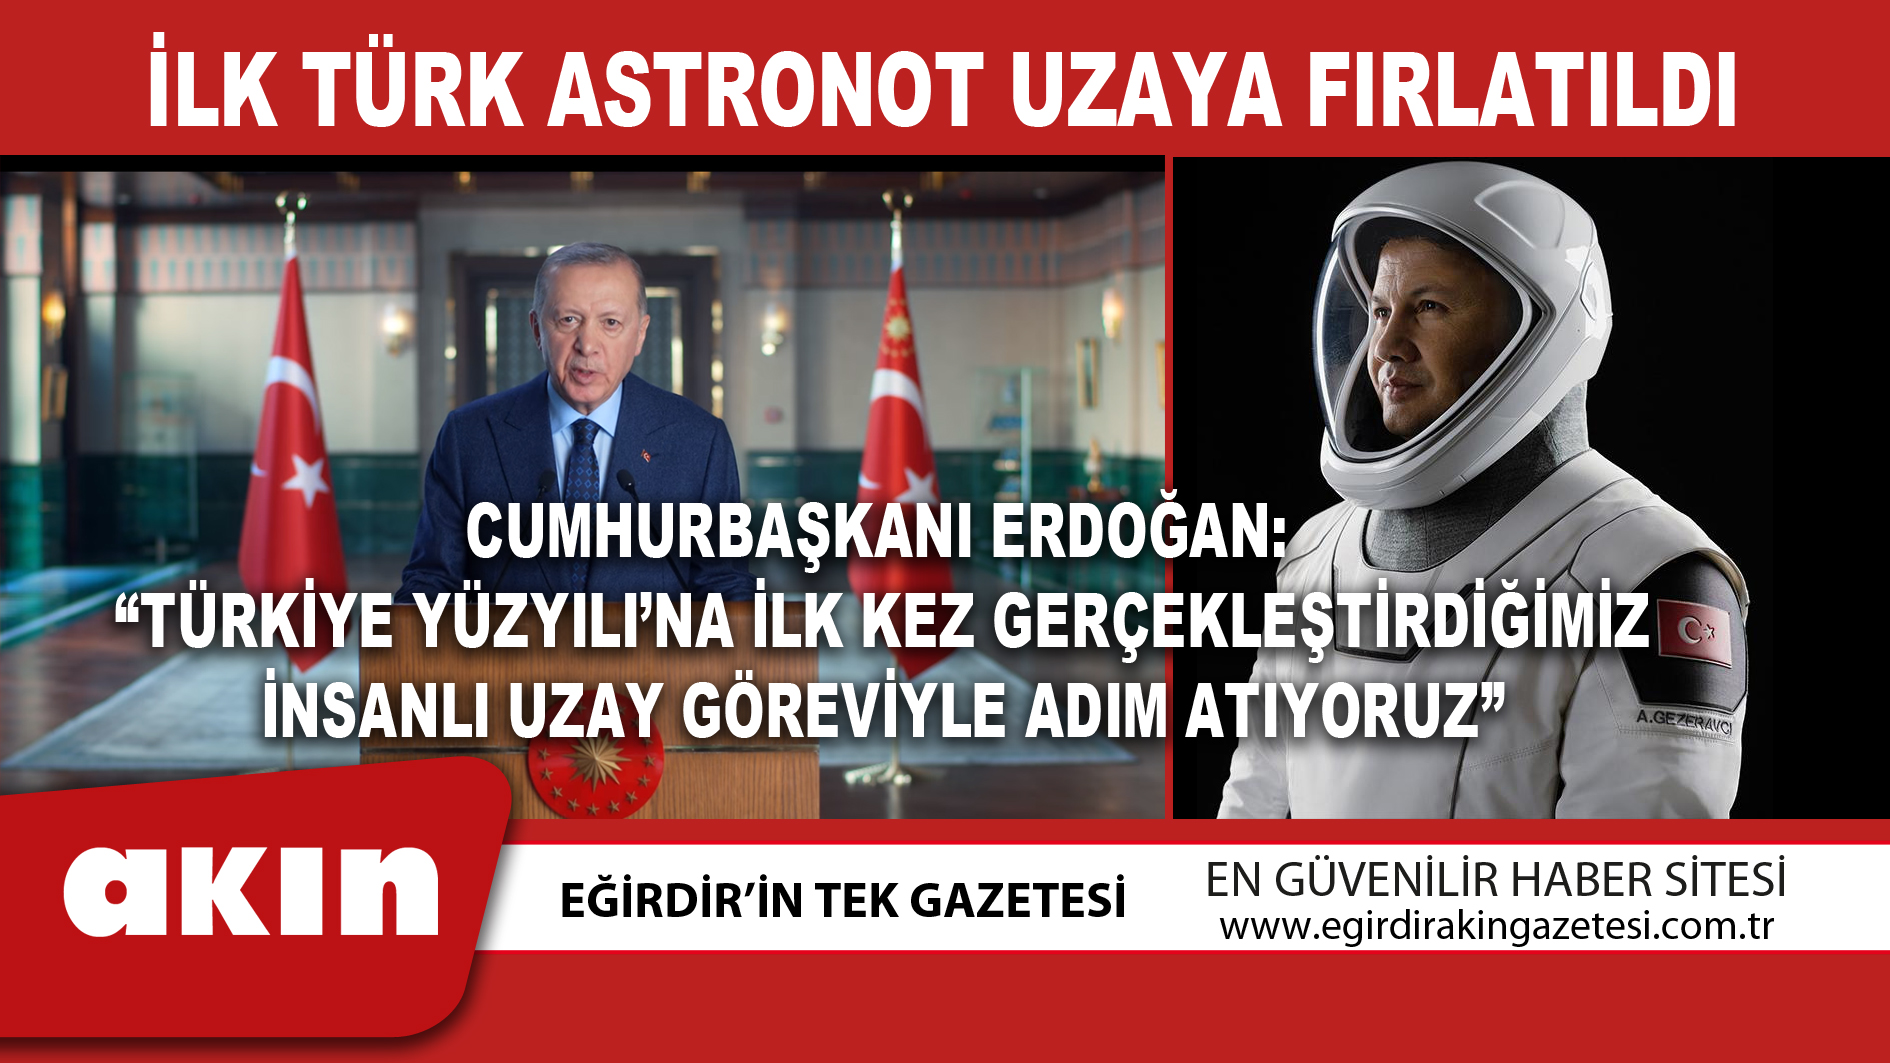 Cumhurbaşkanı Erdoğan:  “Türkiye Yüzyılı’na İlk Kez Gerçekleştirdiğimiz İnsanlı Uzay Göreviyle Adım Atıyoruz”